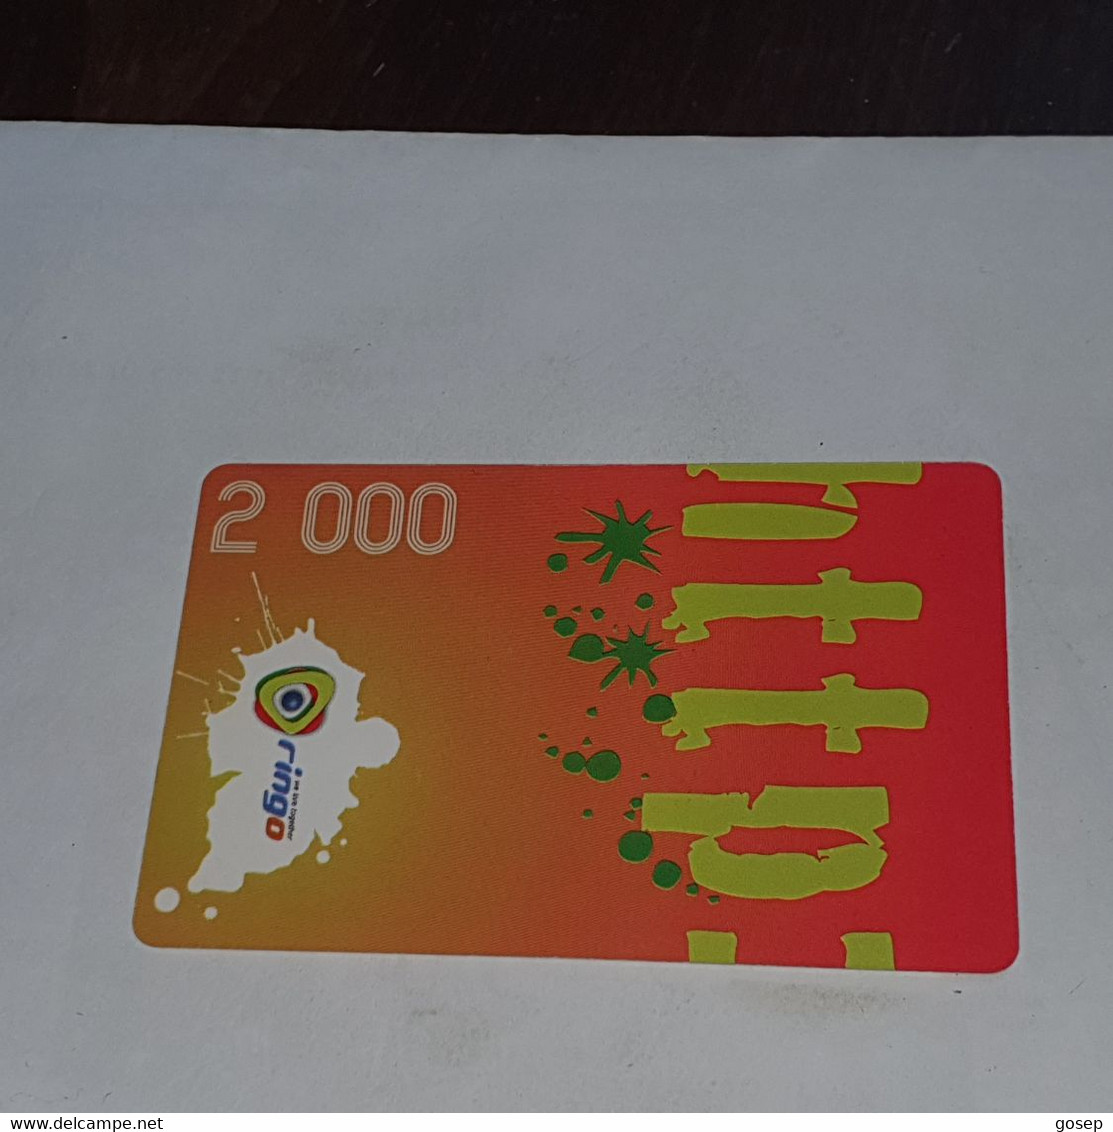 Cameroon-(CAM)-RINGO-(30)-(2.000)-(DUMMY)-(11/2009)+1card Prepiad - Cameroon